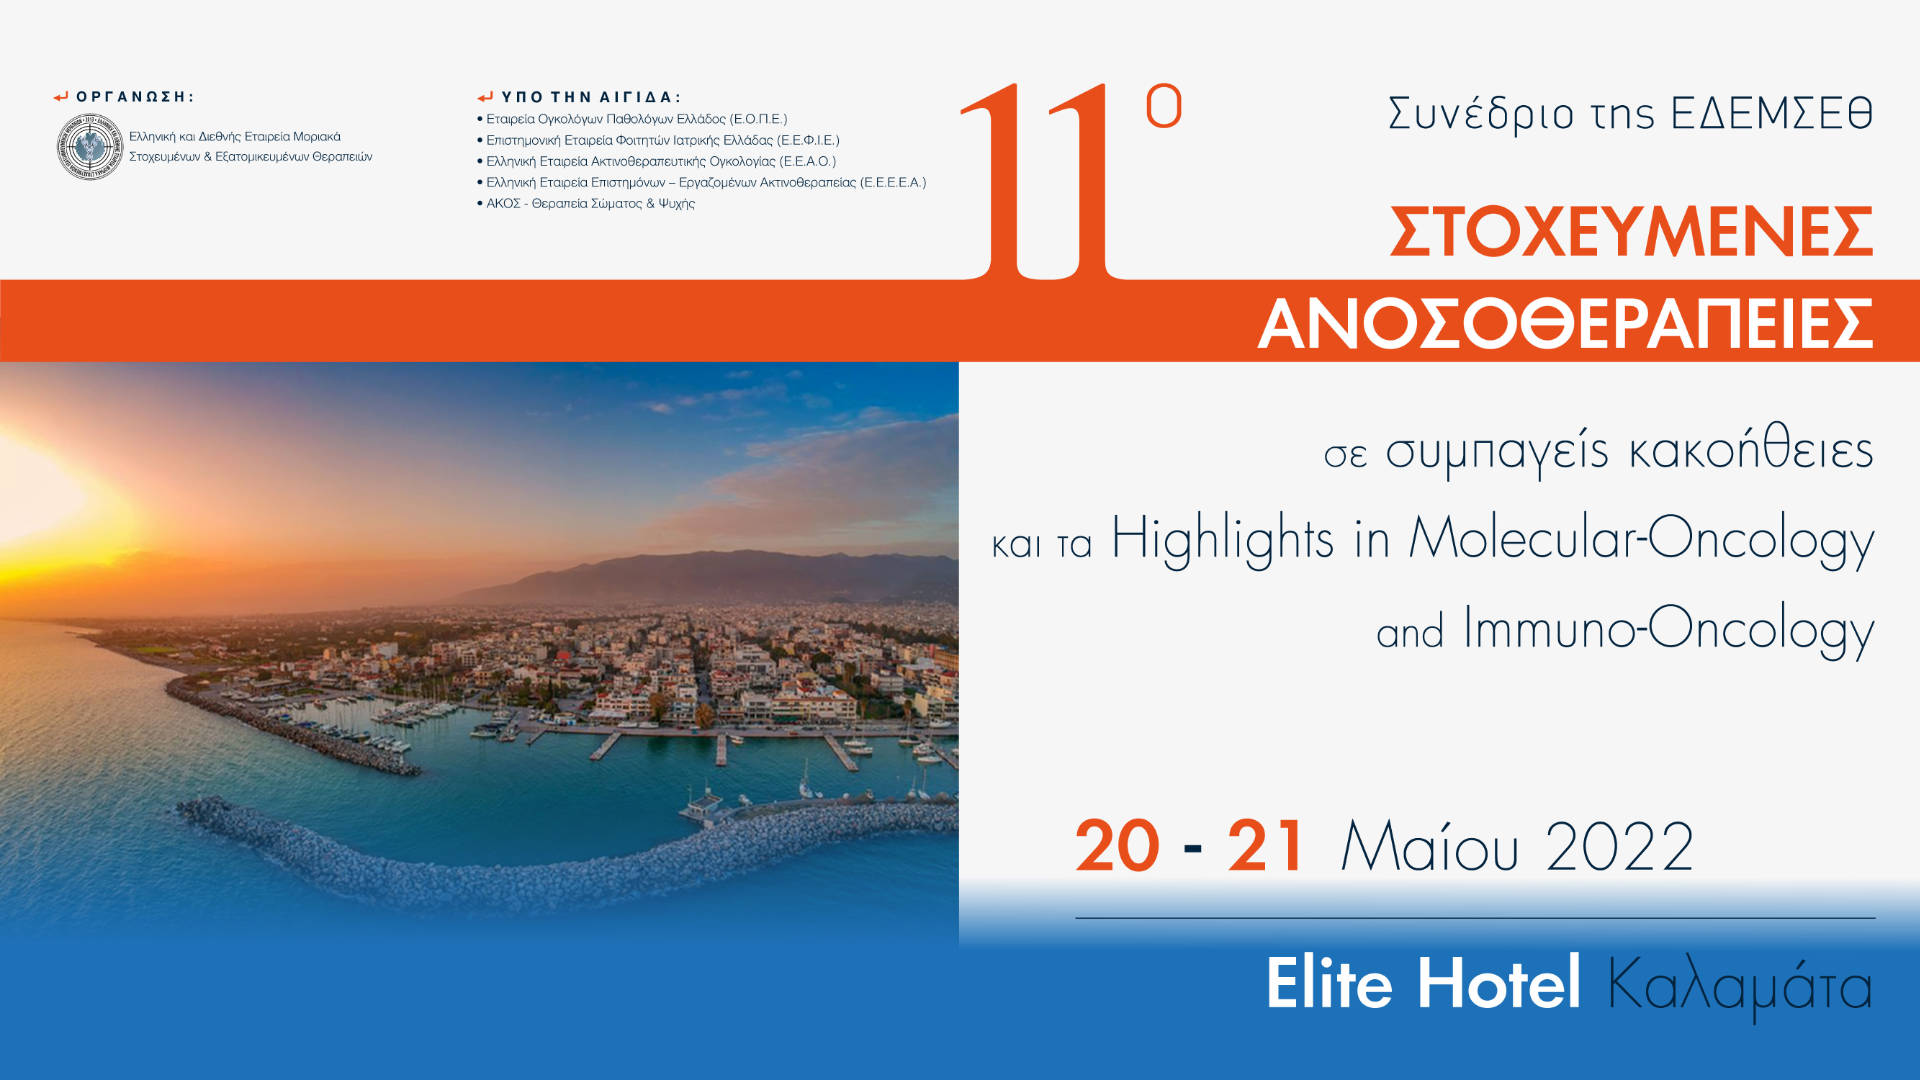 11ο Συνέδριο της Ελληνικής και Διεθνούς Εταιρείας Μοριακά Στοχευμένων Εξατομικευμένων Θεραπειών με θέμα: Στοχευμένες Ανοσοθεραπείες σε συμπαγείς κακοήθειες και τα Ηighlights in Molecular-Oncology and Immuno-Oncology